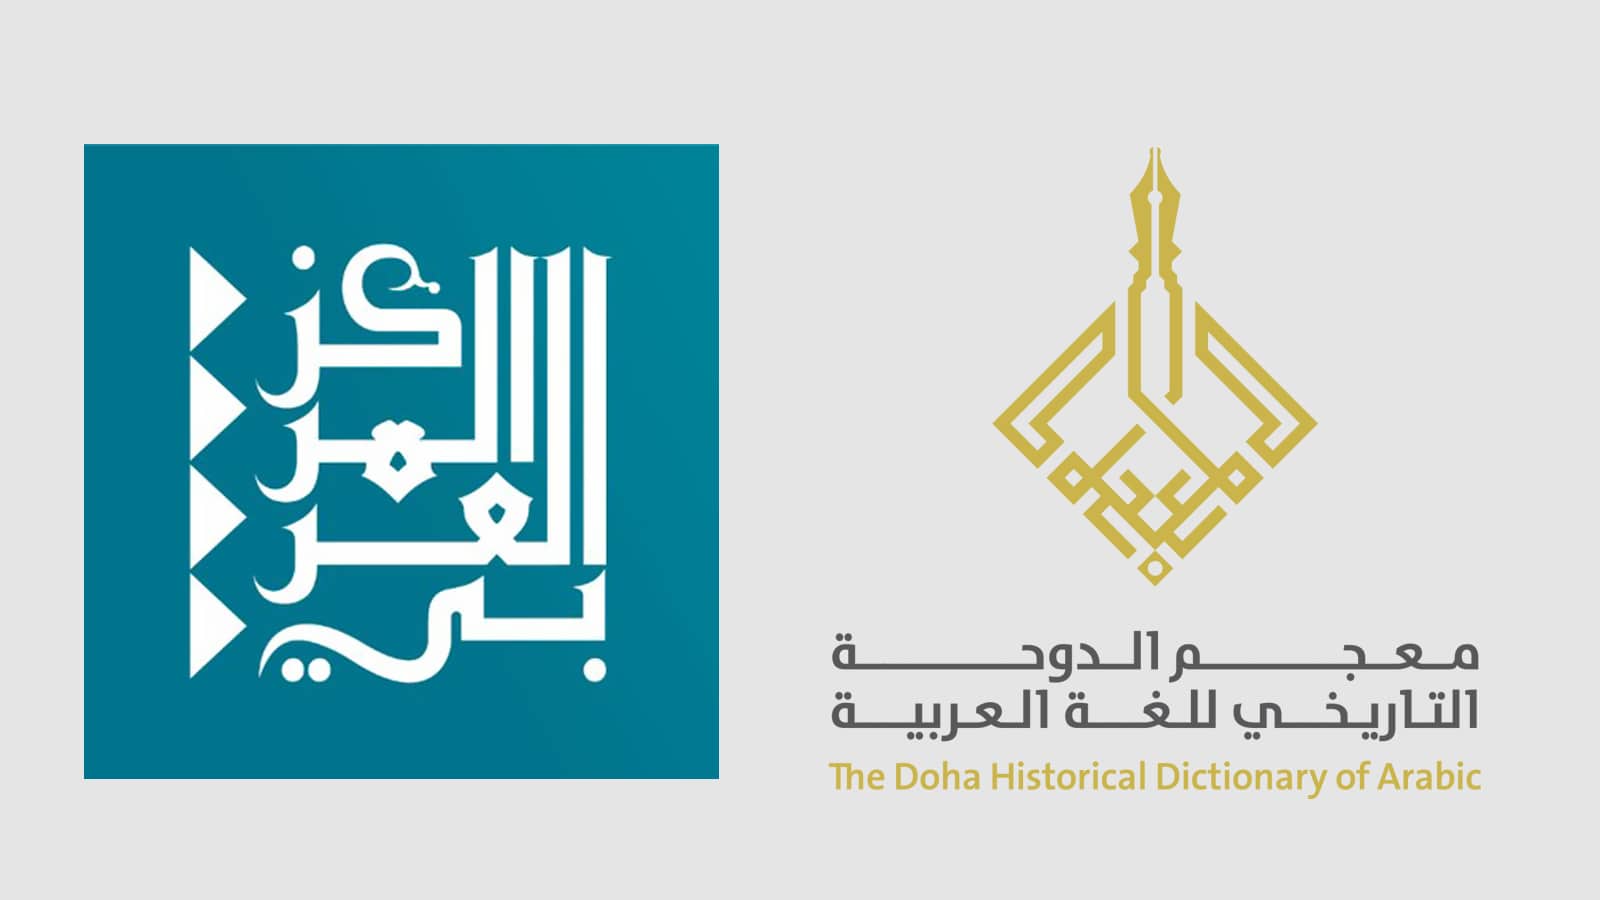 المركز العربي للأبحاث يعلن عن الانتهاء من المرحلة الثانية في عمل معجم الدوحة التاريخي للغة العربية